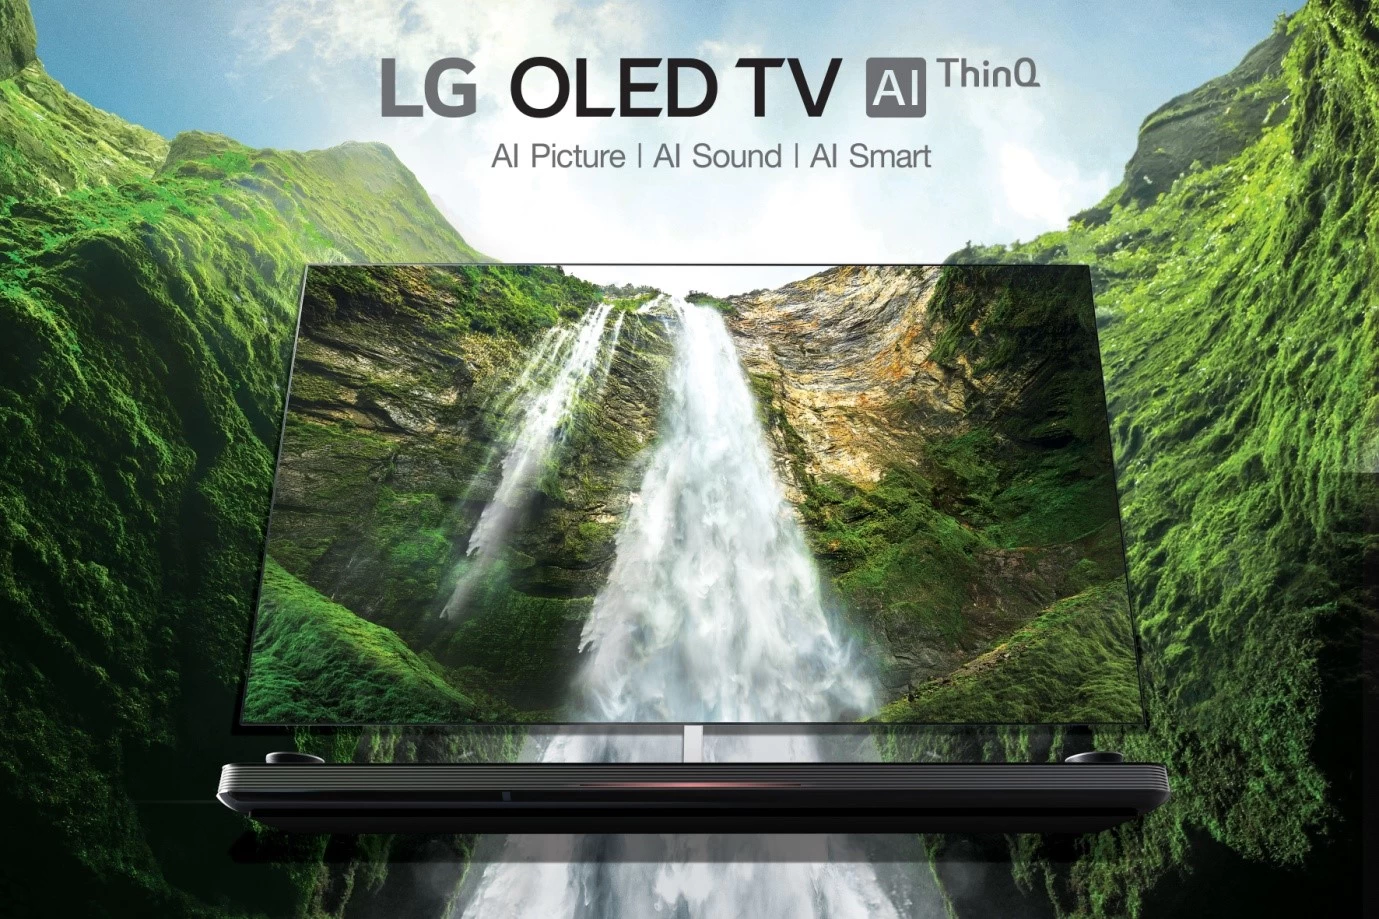 LG OLED TV W9 series 1 | ‎LG | สัมผัส LG OLED TV ซีรี่ส์ W9 ที่สุดแห่งทีวี OLED ตัวท็อป ทั้งภาพและเสียง ฉลาดด้วย AI สมองอัจฉริยะ พร้อมรองรับการสั่งงานด้วยเสียงภาษาไทยเต็มรูปแบบ